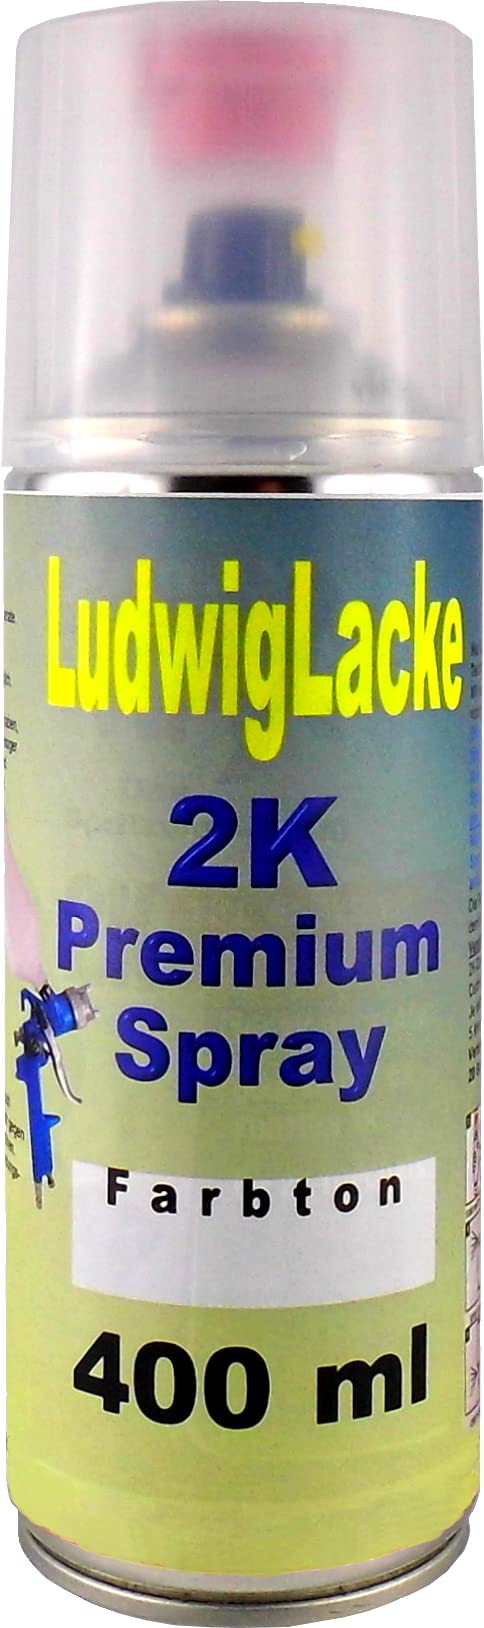 Ludwig Lacke RAL 9001 CREMEWEISS 2K Premium Spray 400ml von Ludwig Lacke